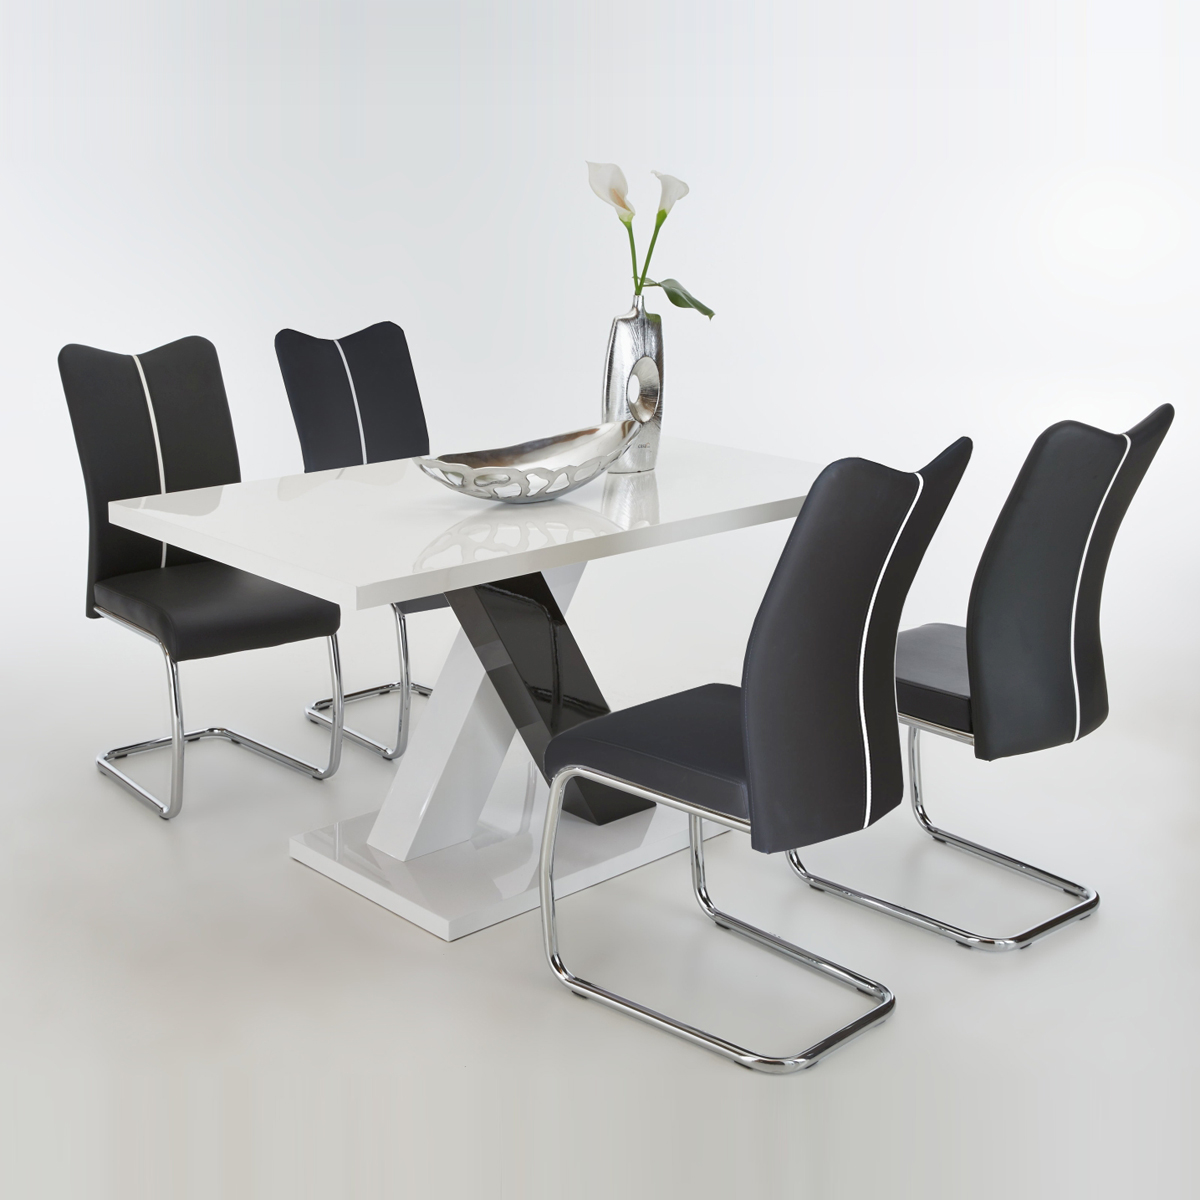 Tischgruppe Xenia Tisch hochglanz weiß 4 Freischwinger Stühle 